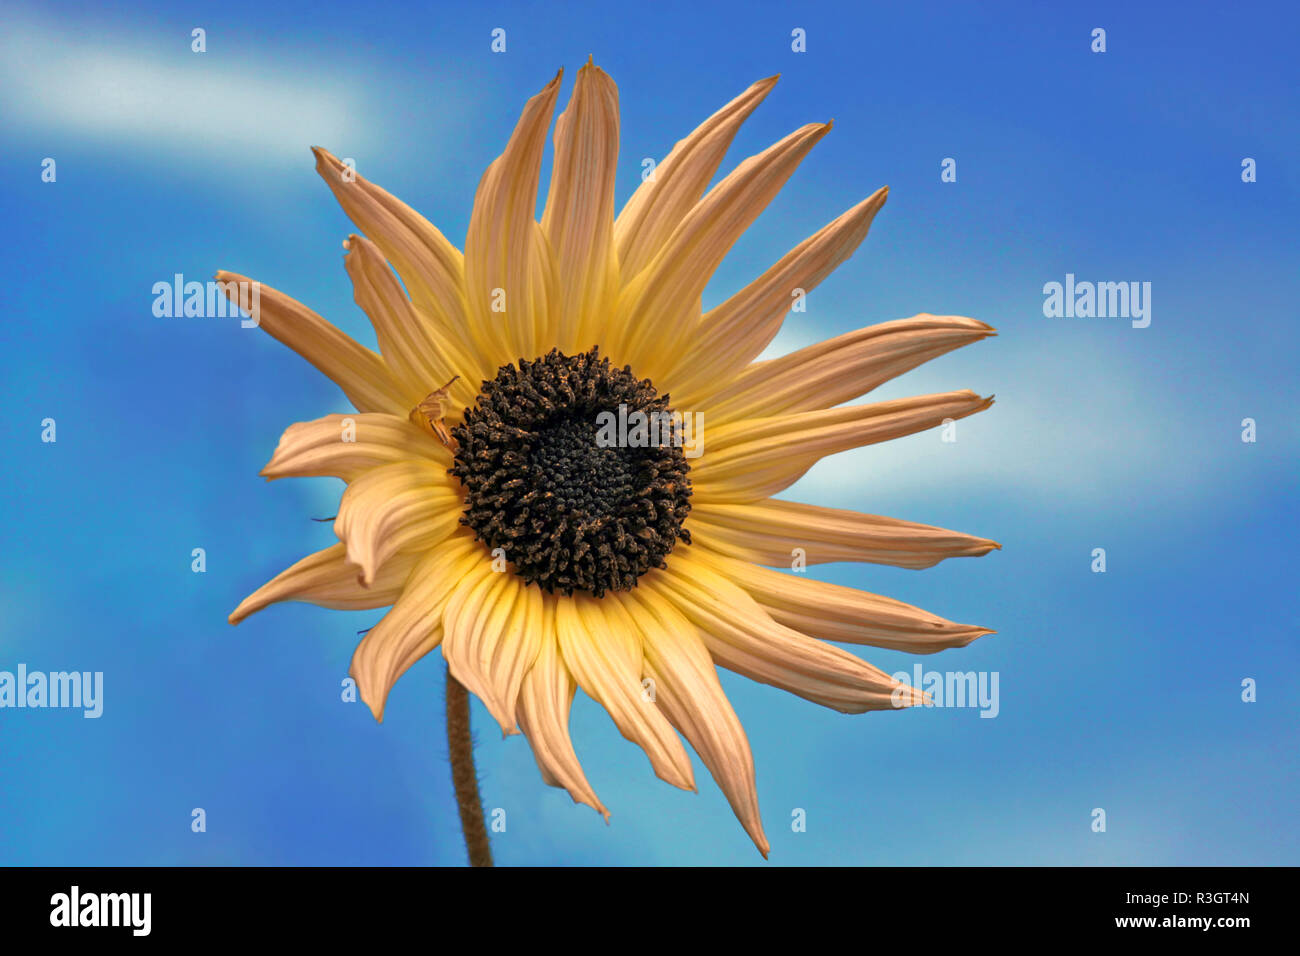 Sunflower against a blue sky Banque D'Images